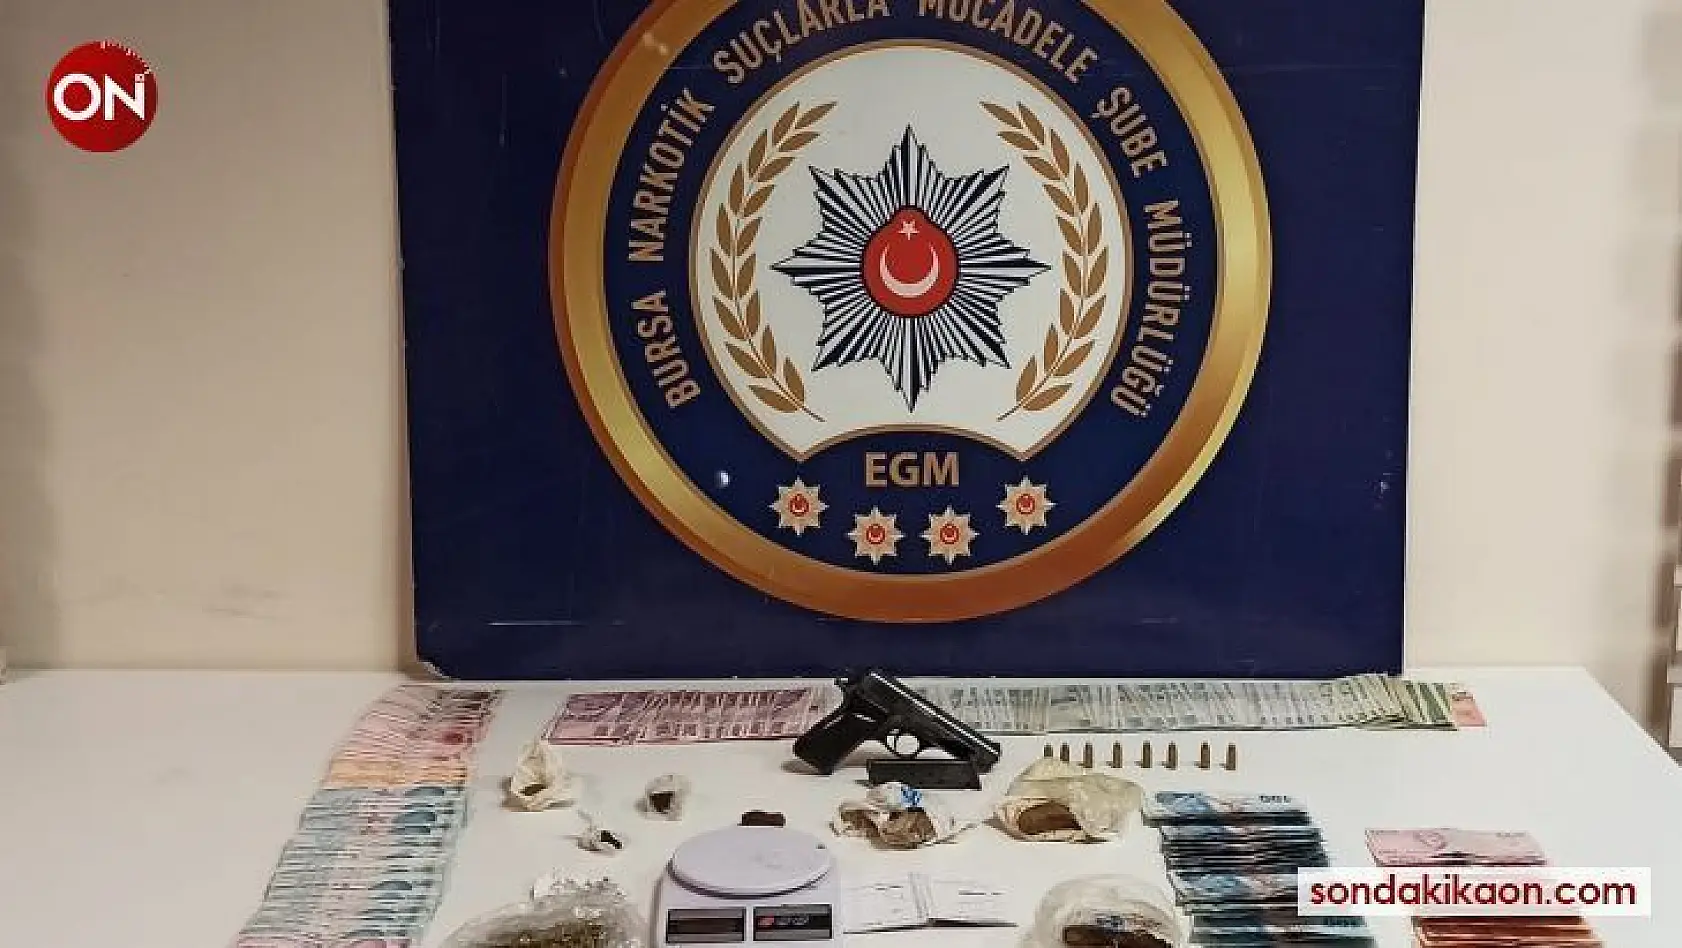 Bursa'da uyuşturucu operasyonundan tutuklanan 7 kişinin ardından 6 kişi daha gözaltına alındı